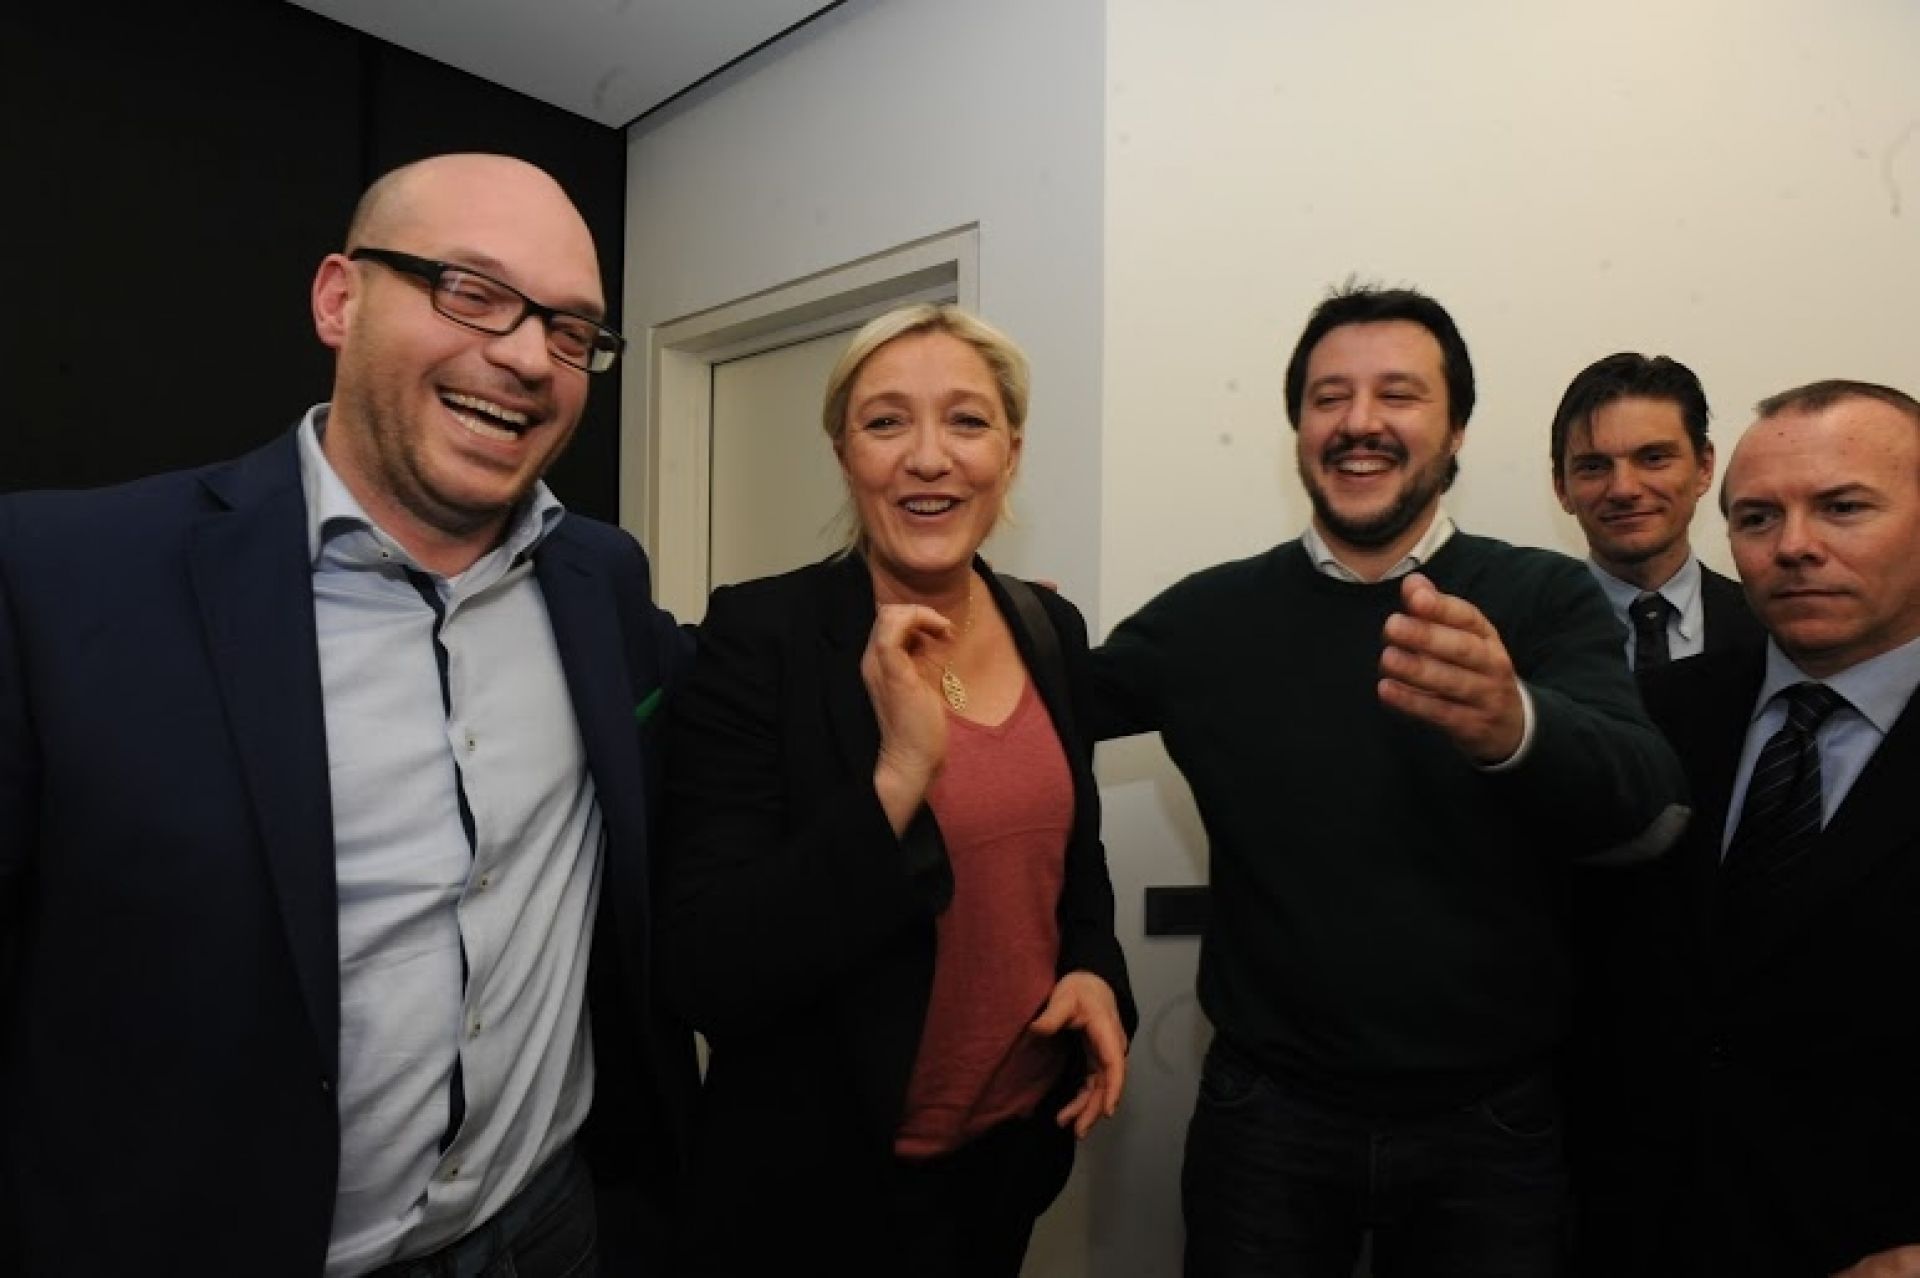 La svolta lepenista di Salvini